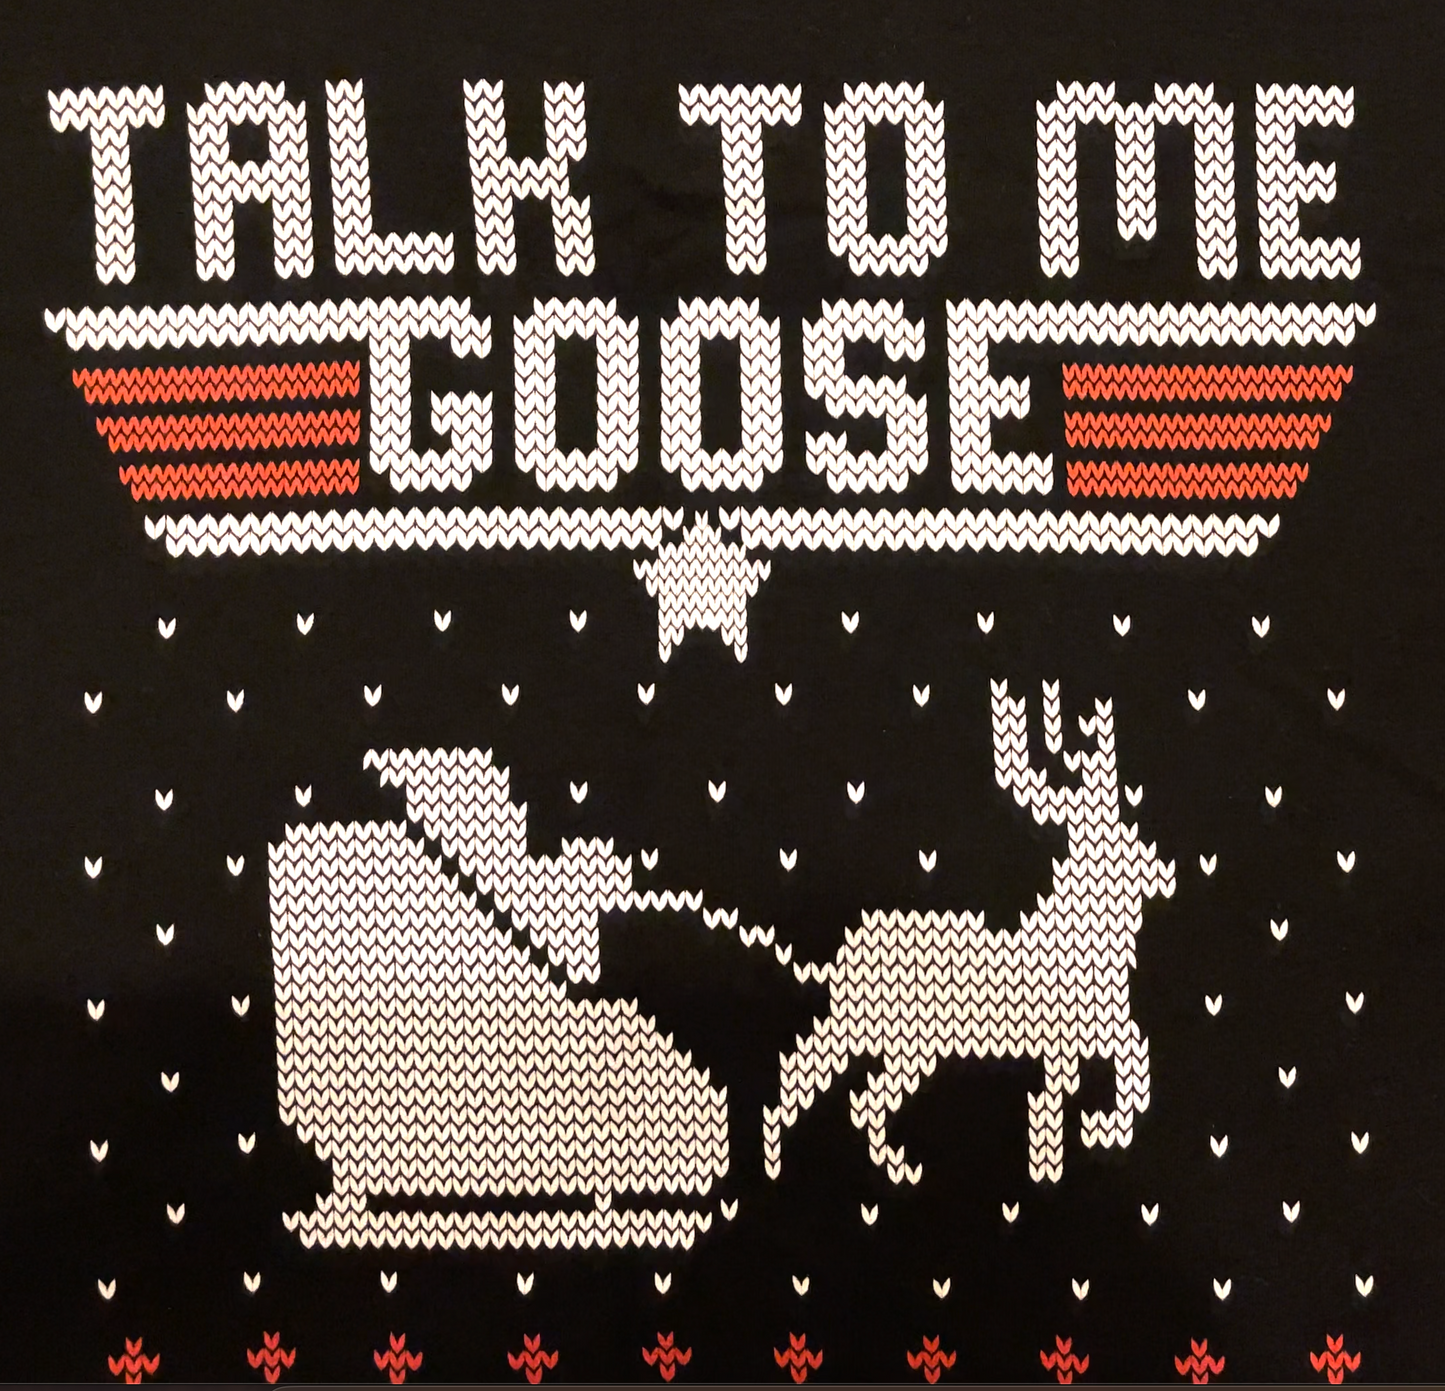 Talk To Me Goose Ugly Christmas Sweatshirt